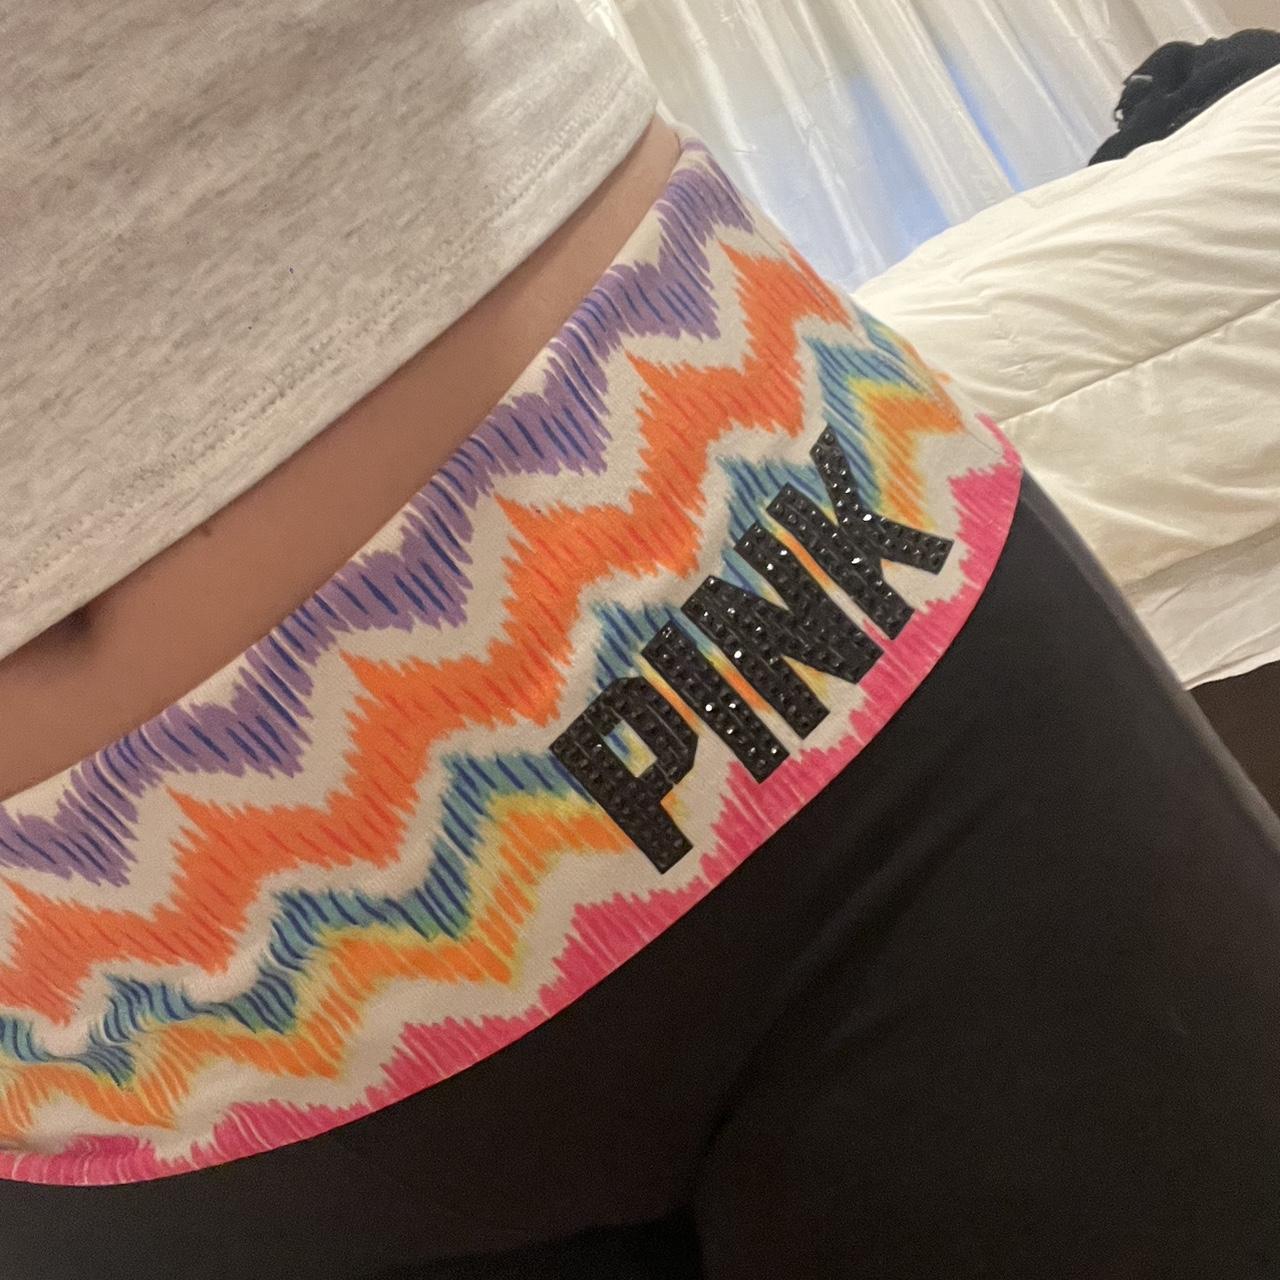 Victoria's Secret PINK yoga pants